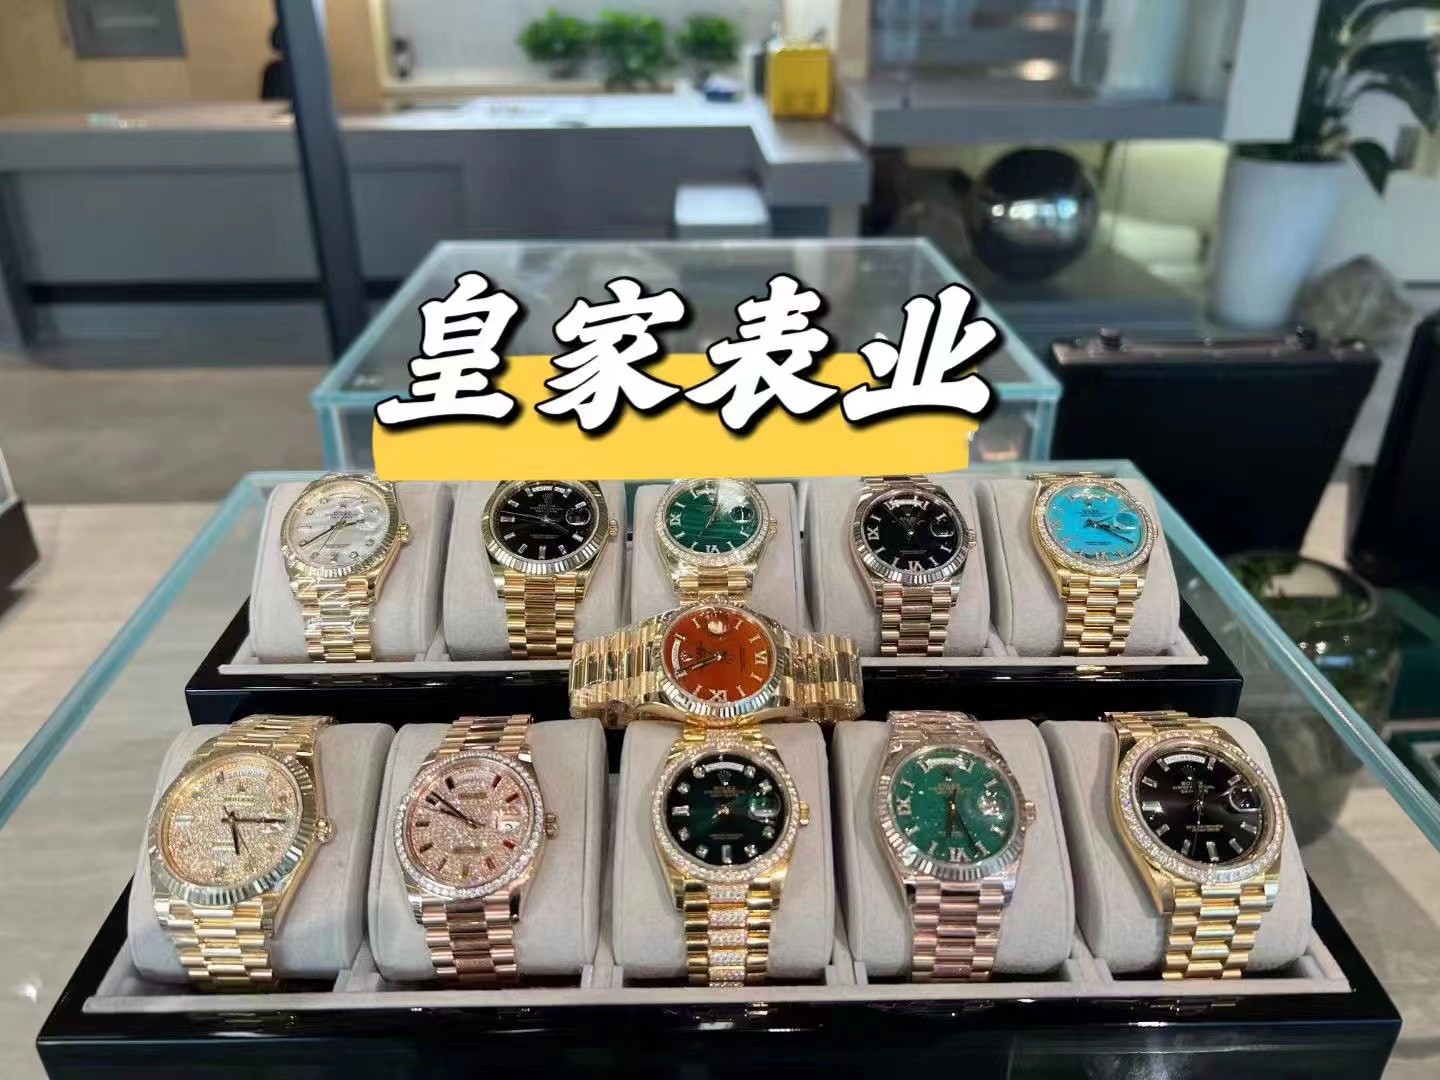 高仿手表哪里可以买到,五个购买渠道告诉大家-图片2